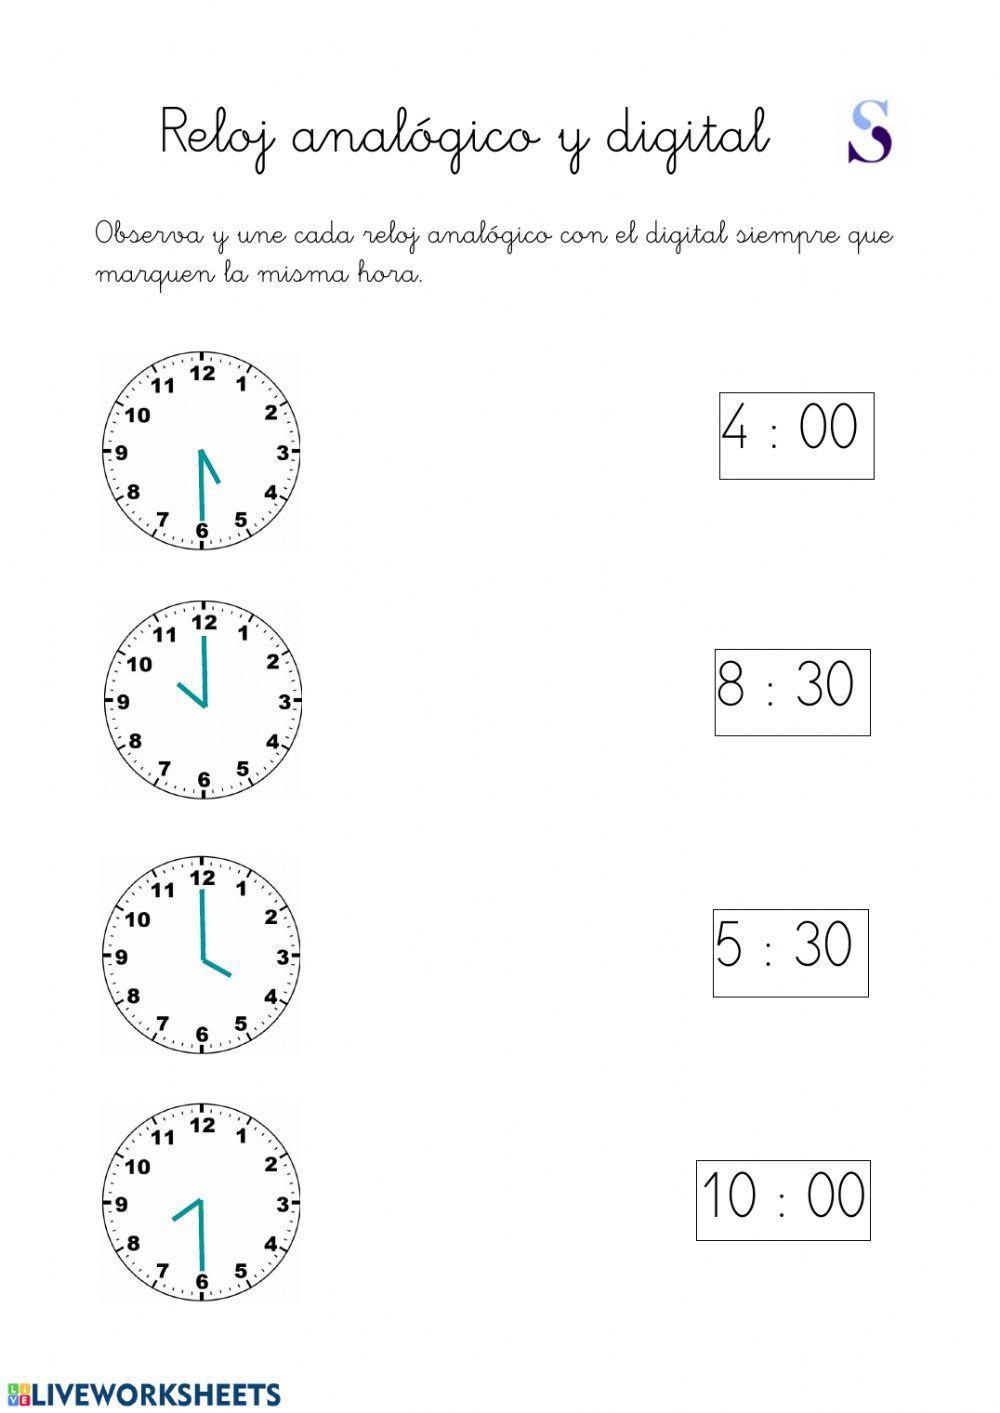 Reloj analógico y digital